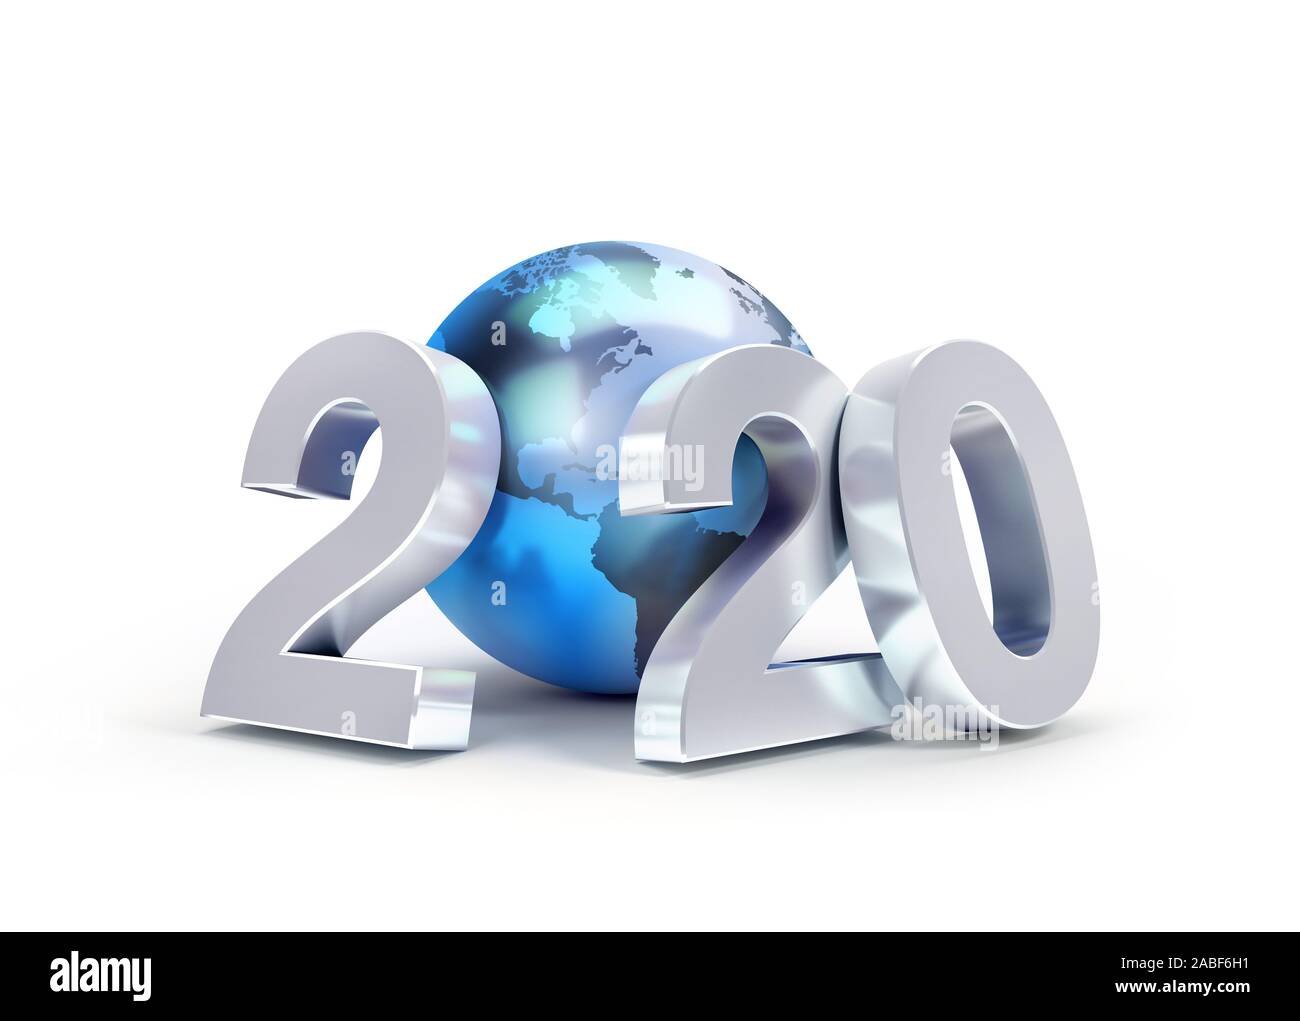 2020 Nouvelle année date nombre composé avec un bleu de la planète terre, l'accent sur l'Amérique, isolé sur blanc - 3D illustration Banque D'Images